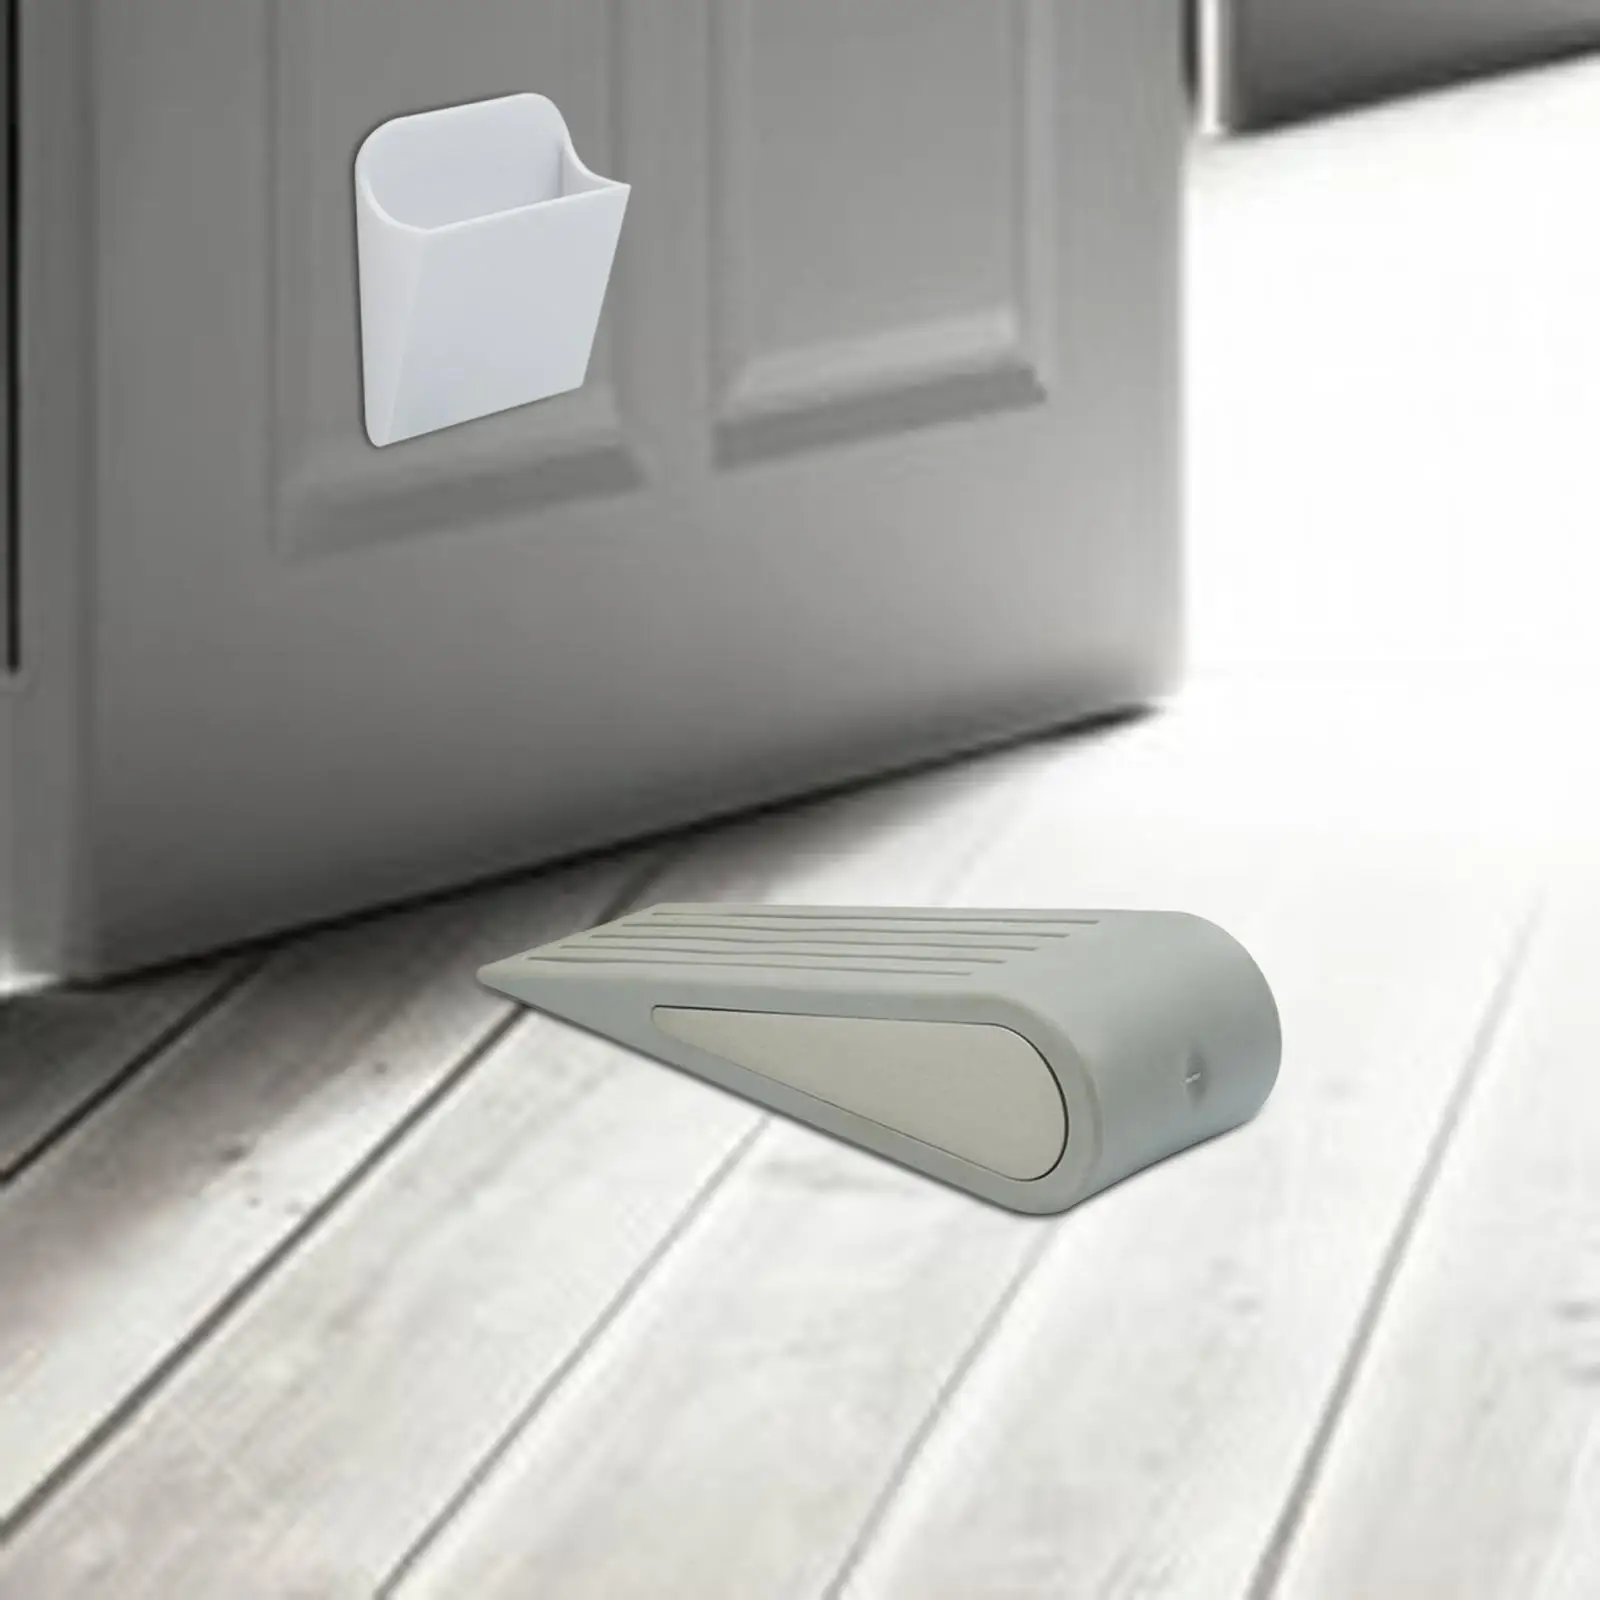 Door Stopper Lightweight Strong Portable Anti Slip Doorstops Door Stop Wedge Protection for Home Bathroom Hotel Office Apartment